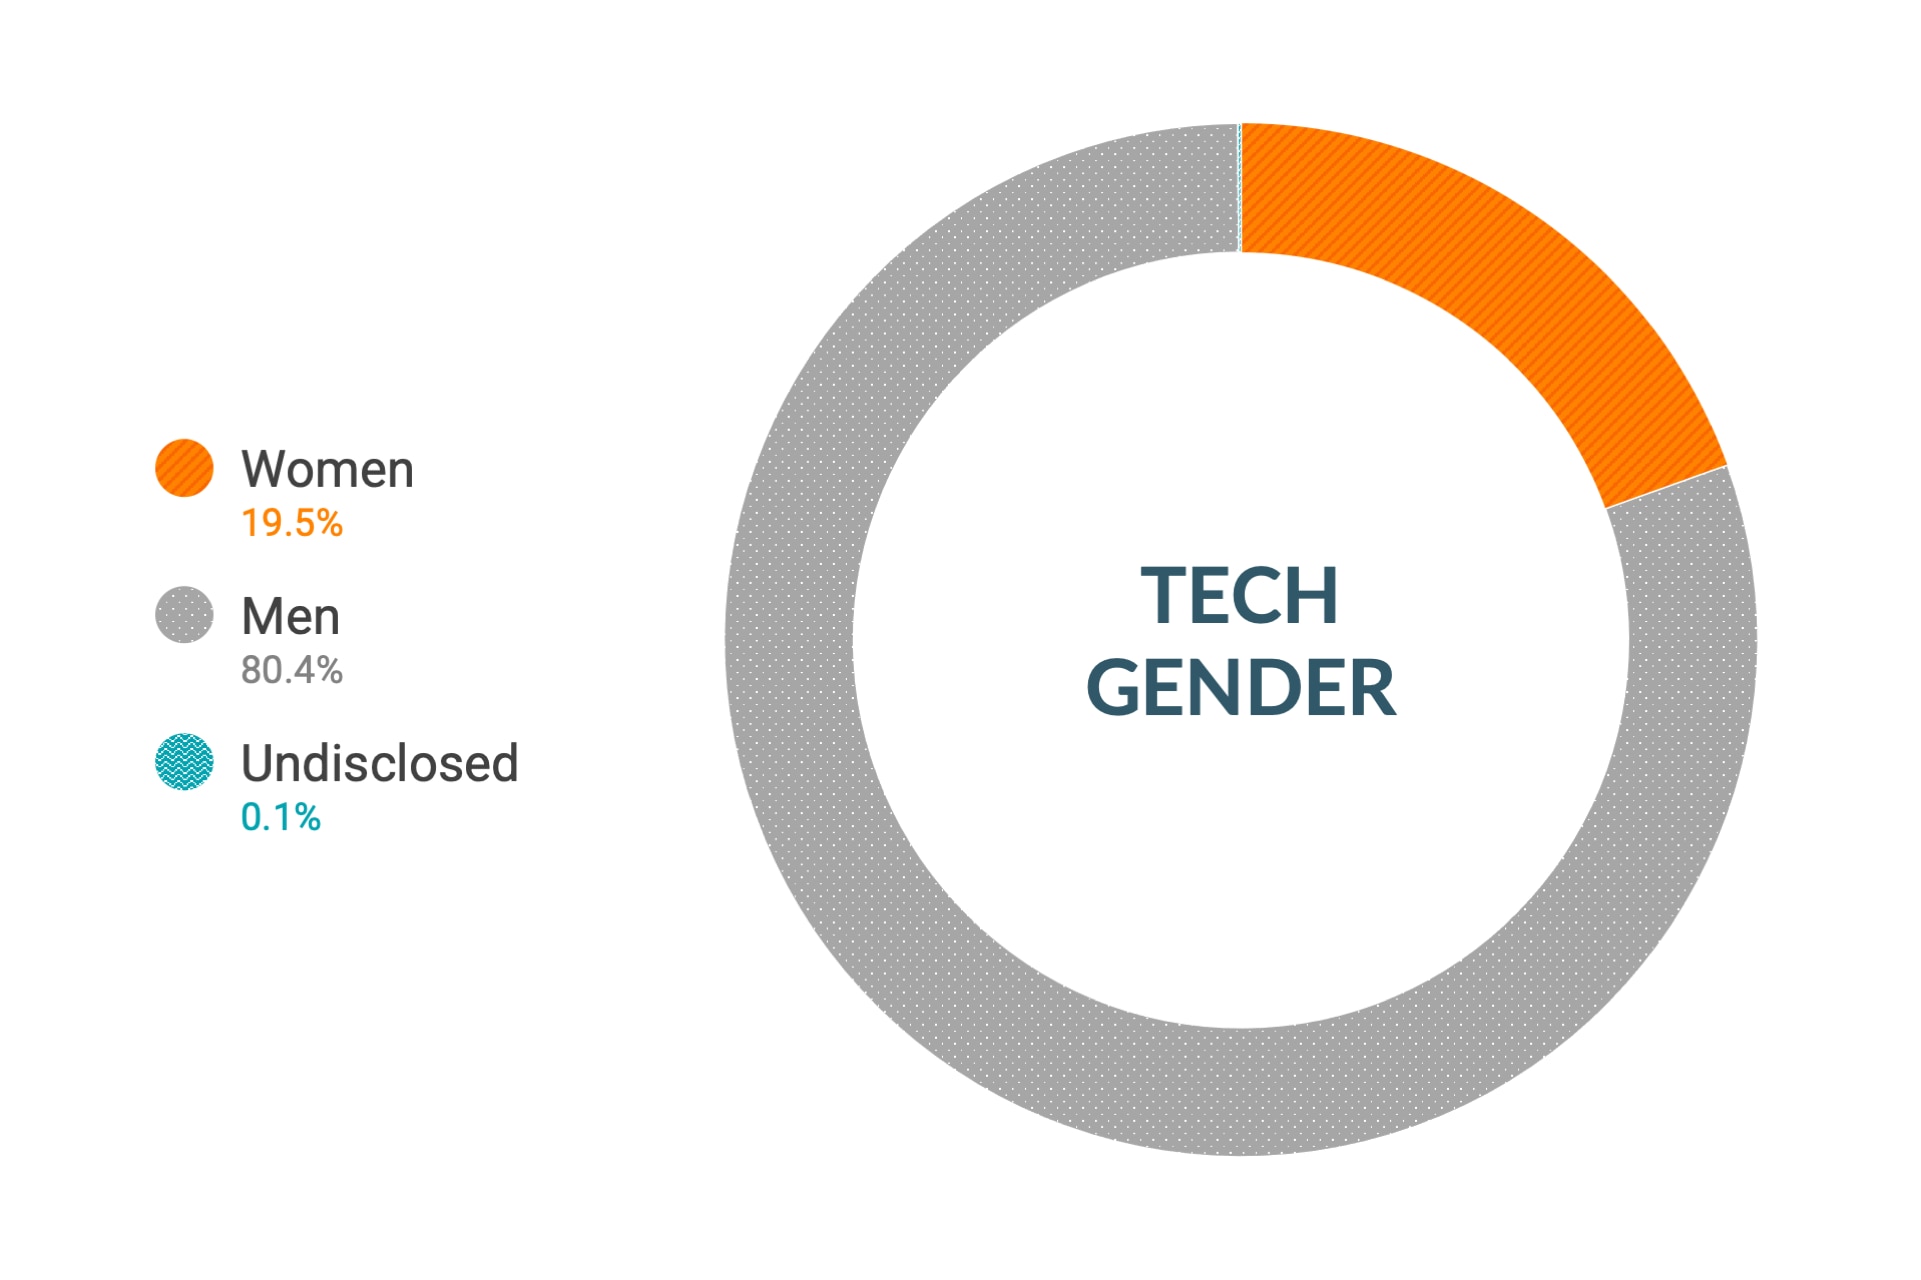 Dane firmy Cloudera dotyczące różnorodności i inkluzywności w kontekście płci na stanowiskach technicznych i inżynieryjnych w skali globalnej: kobiety 17,1%, mężczyźni 82,8%, nie ujawniono 0,1%